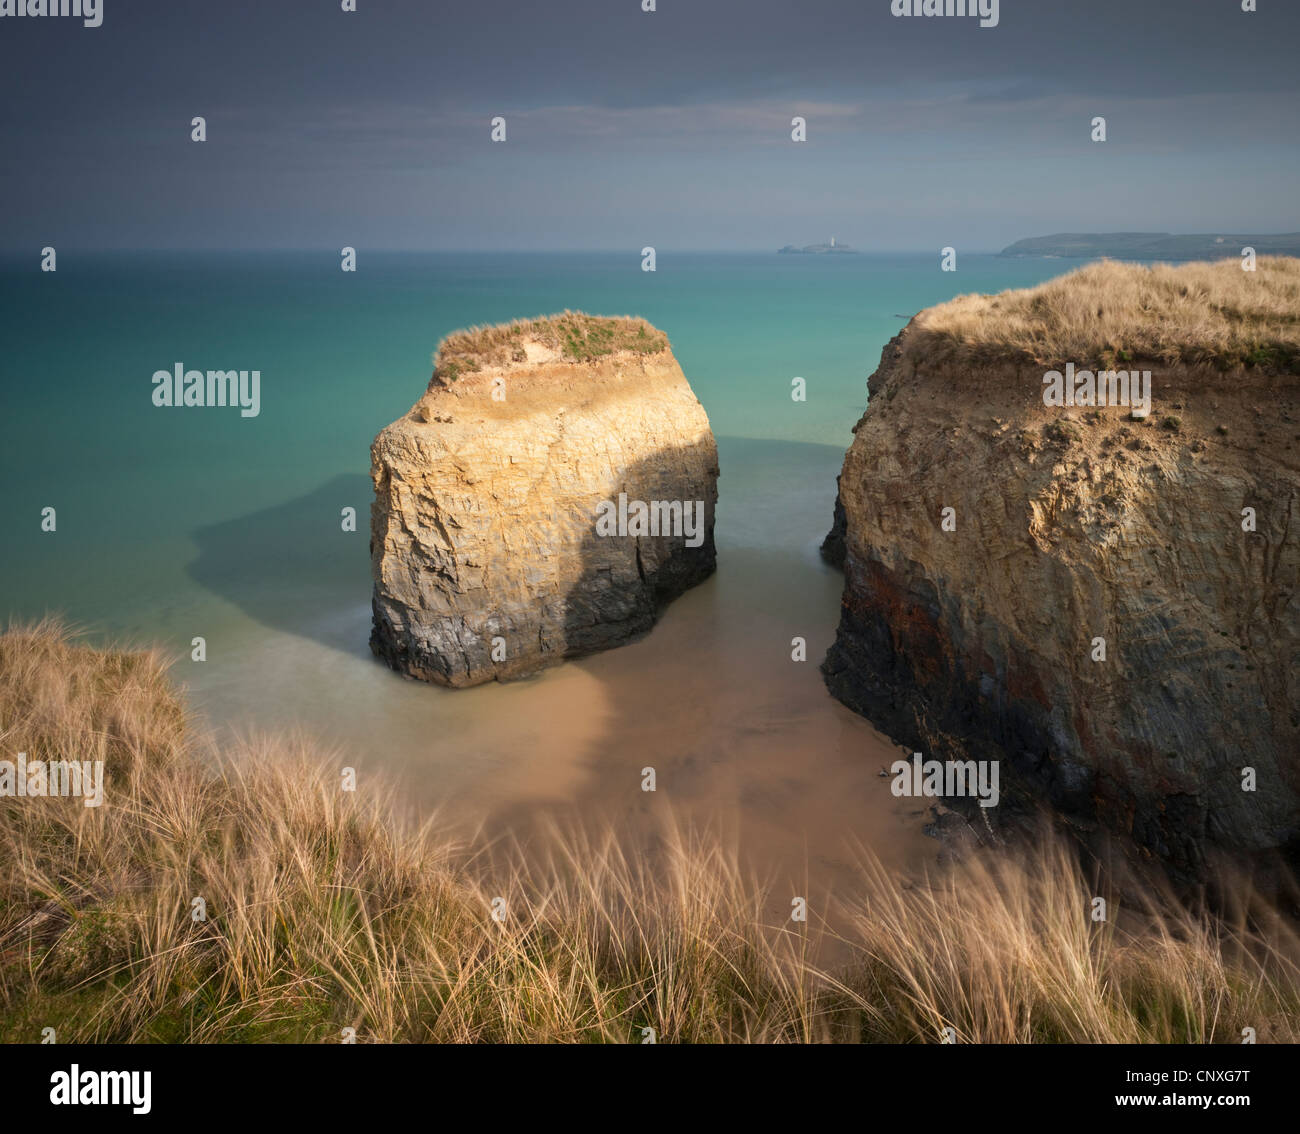 Pila de rocas en la playa de arena de Towans Gwithian, Cornualles, Inglaterra. Primavera (marzo) de 2011. Foto de stock